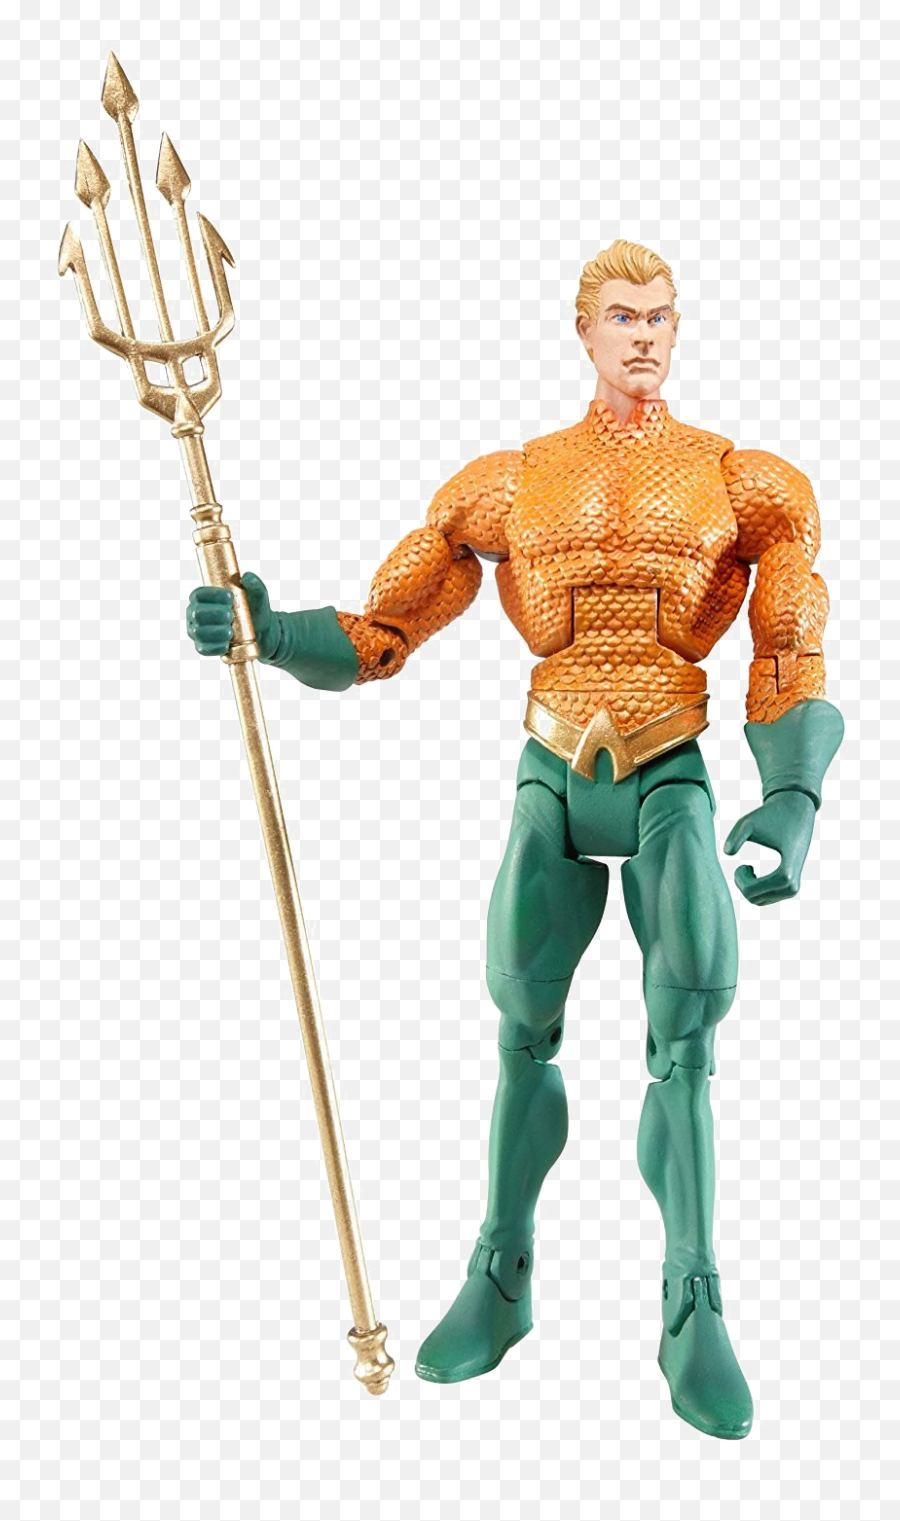 Aquaman Png Image - Aquaman Dc Universe Figure Emoji,Aquaman Png